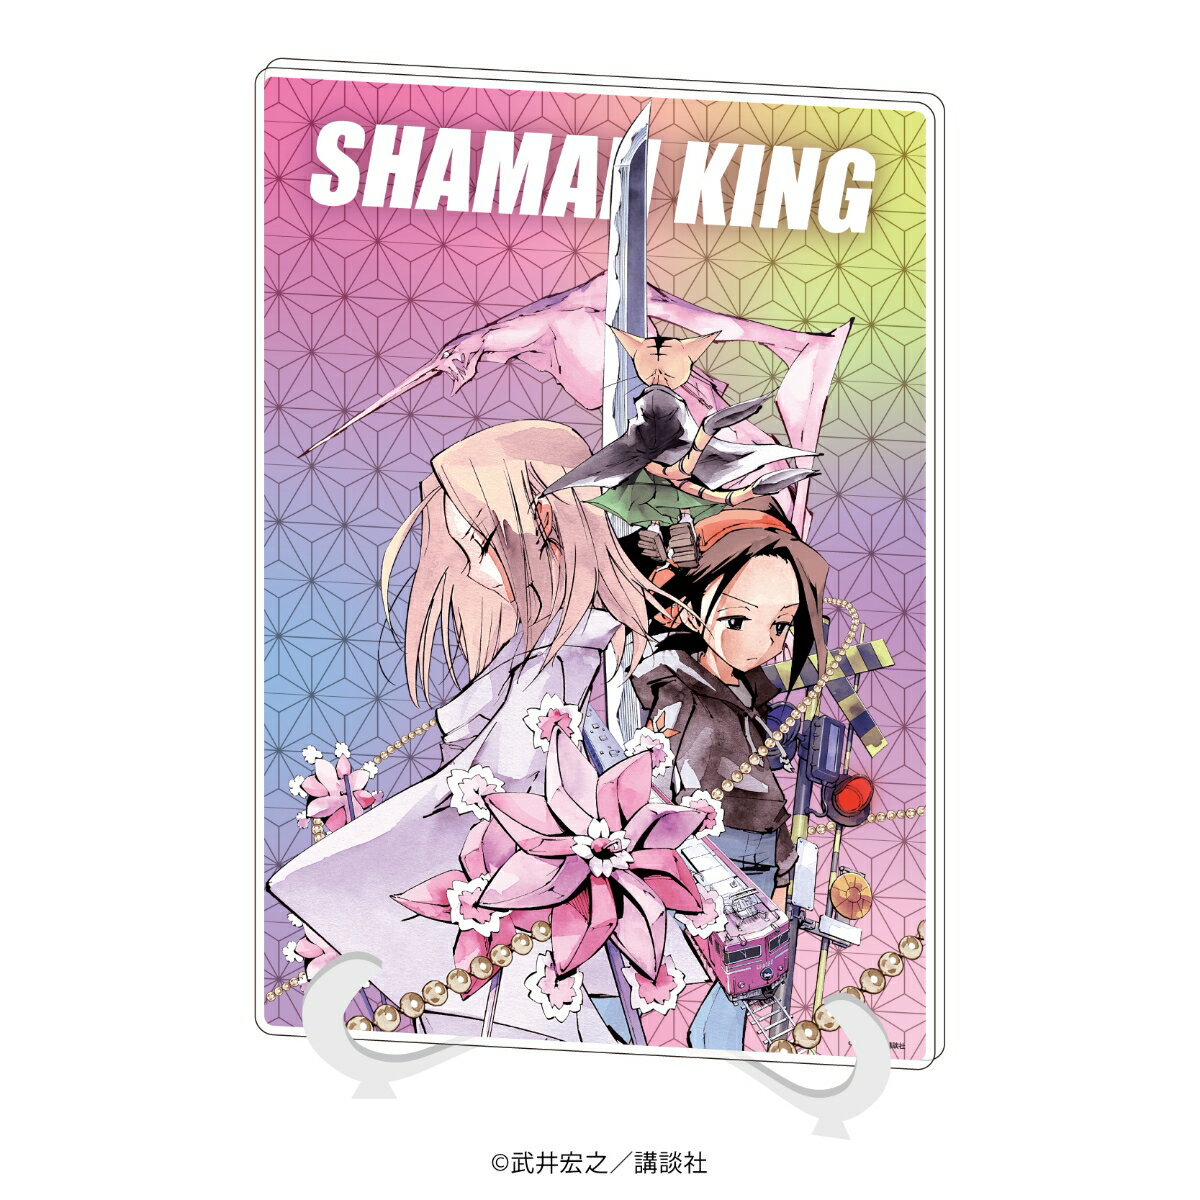 【グッズ】アクリルアートボード(A5サイズ)「SHAMAN KING」07/パターン3(公式イラスト)